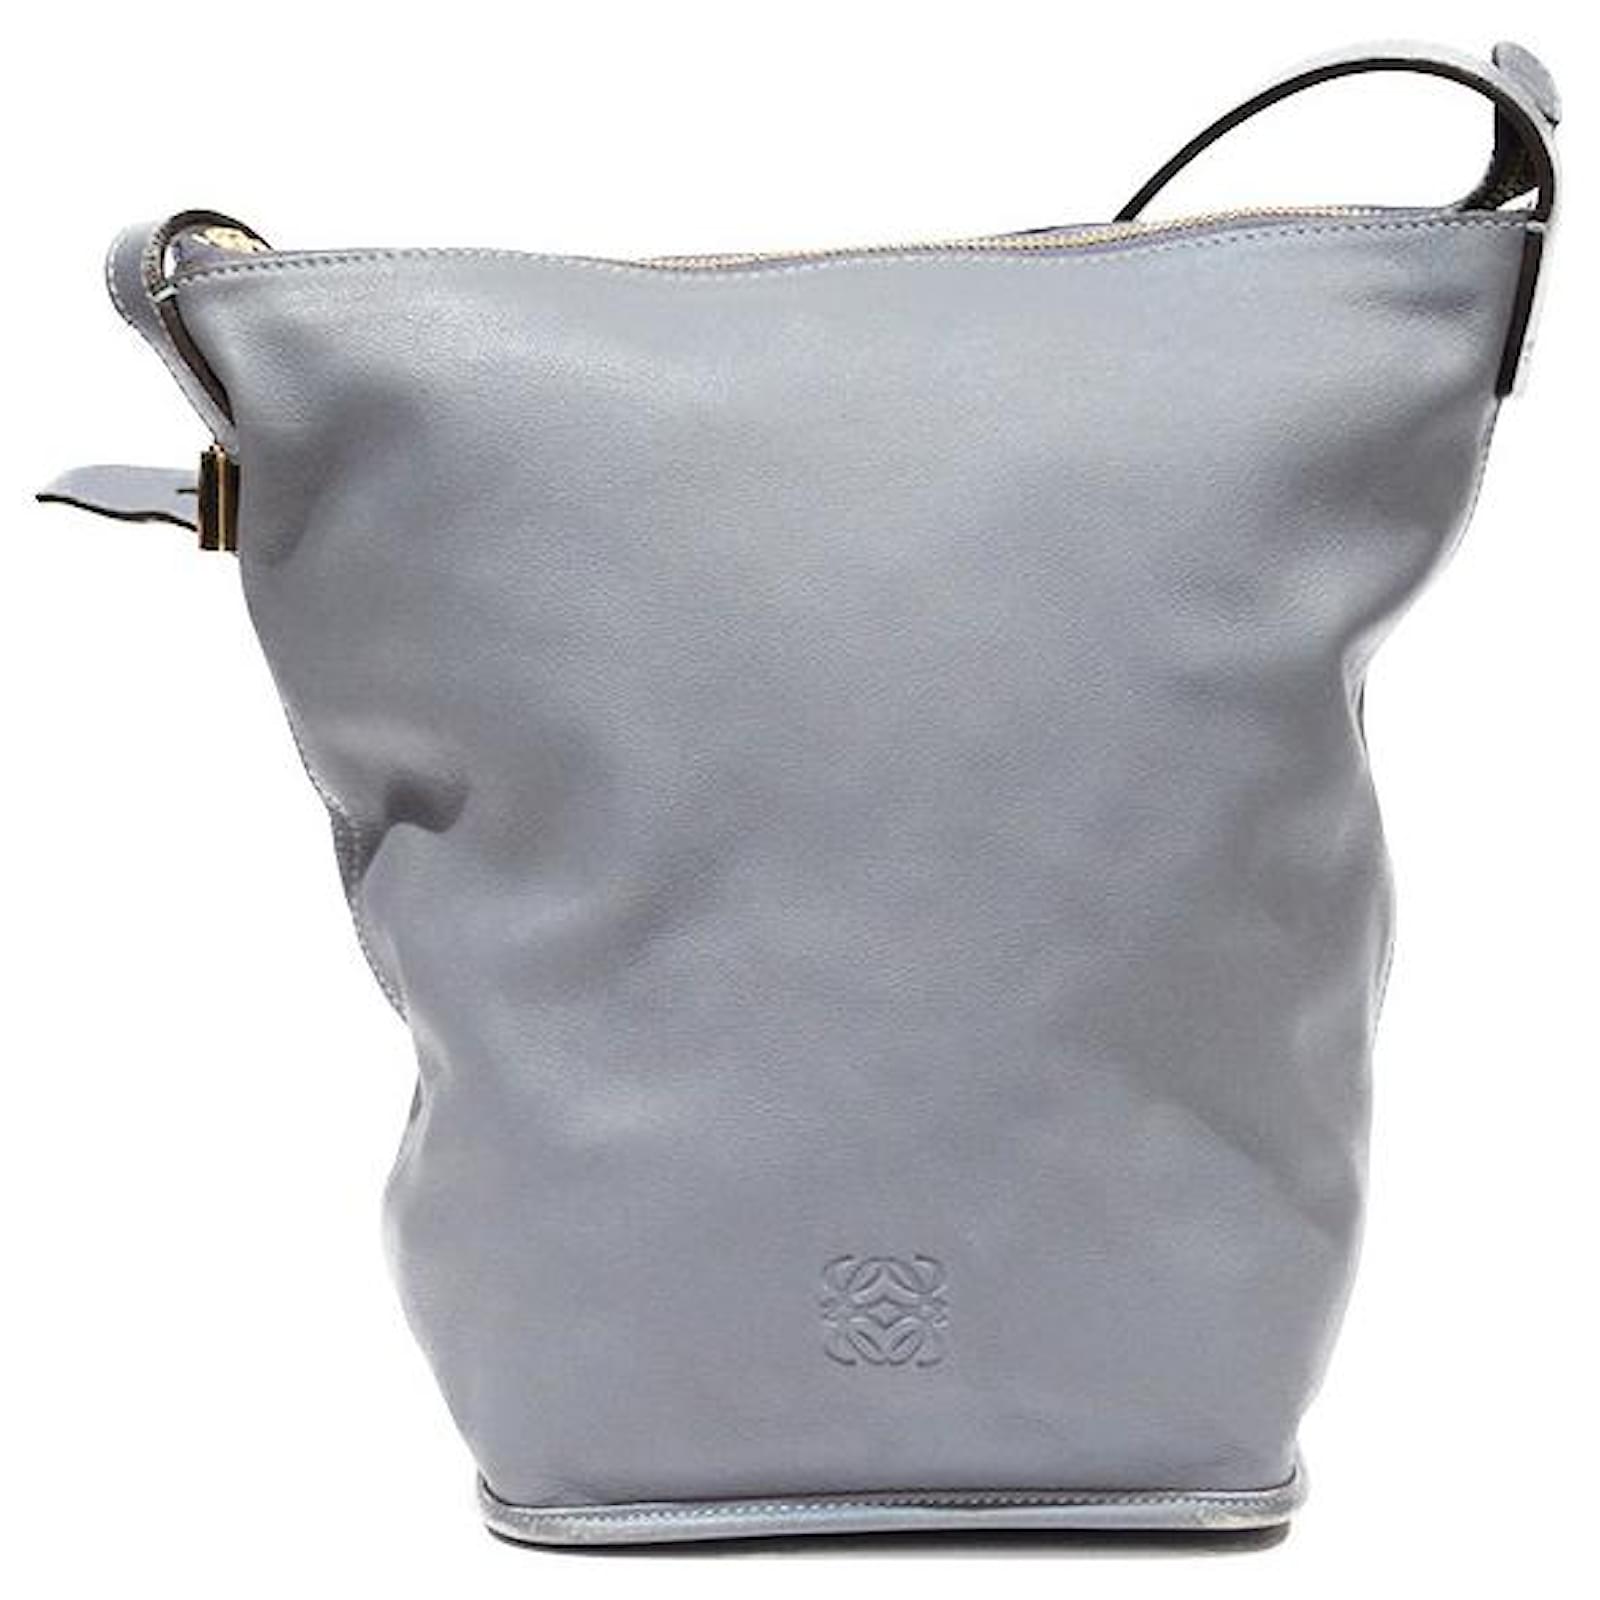 Loewe Bucket Bag Women's Grey - ShopStyle